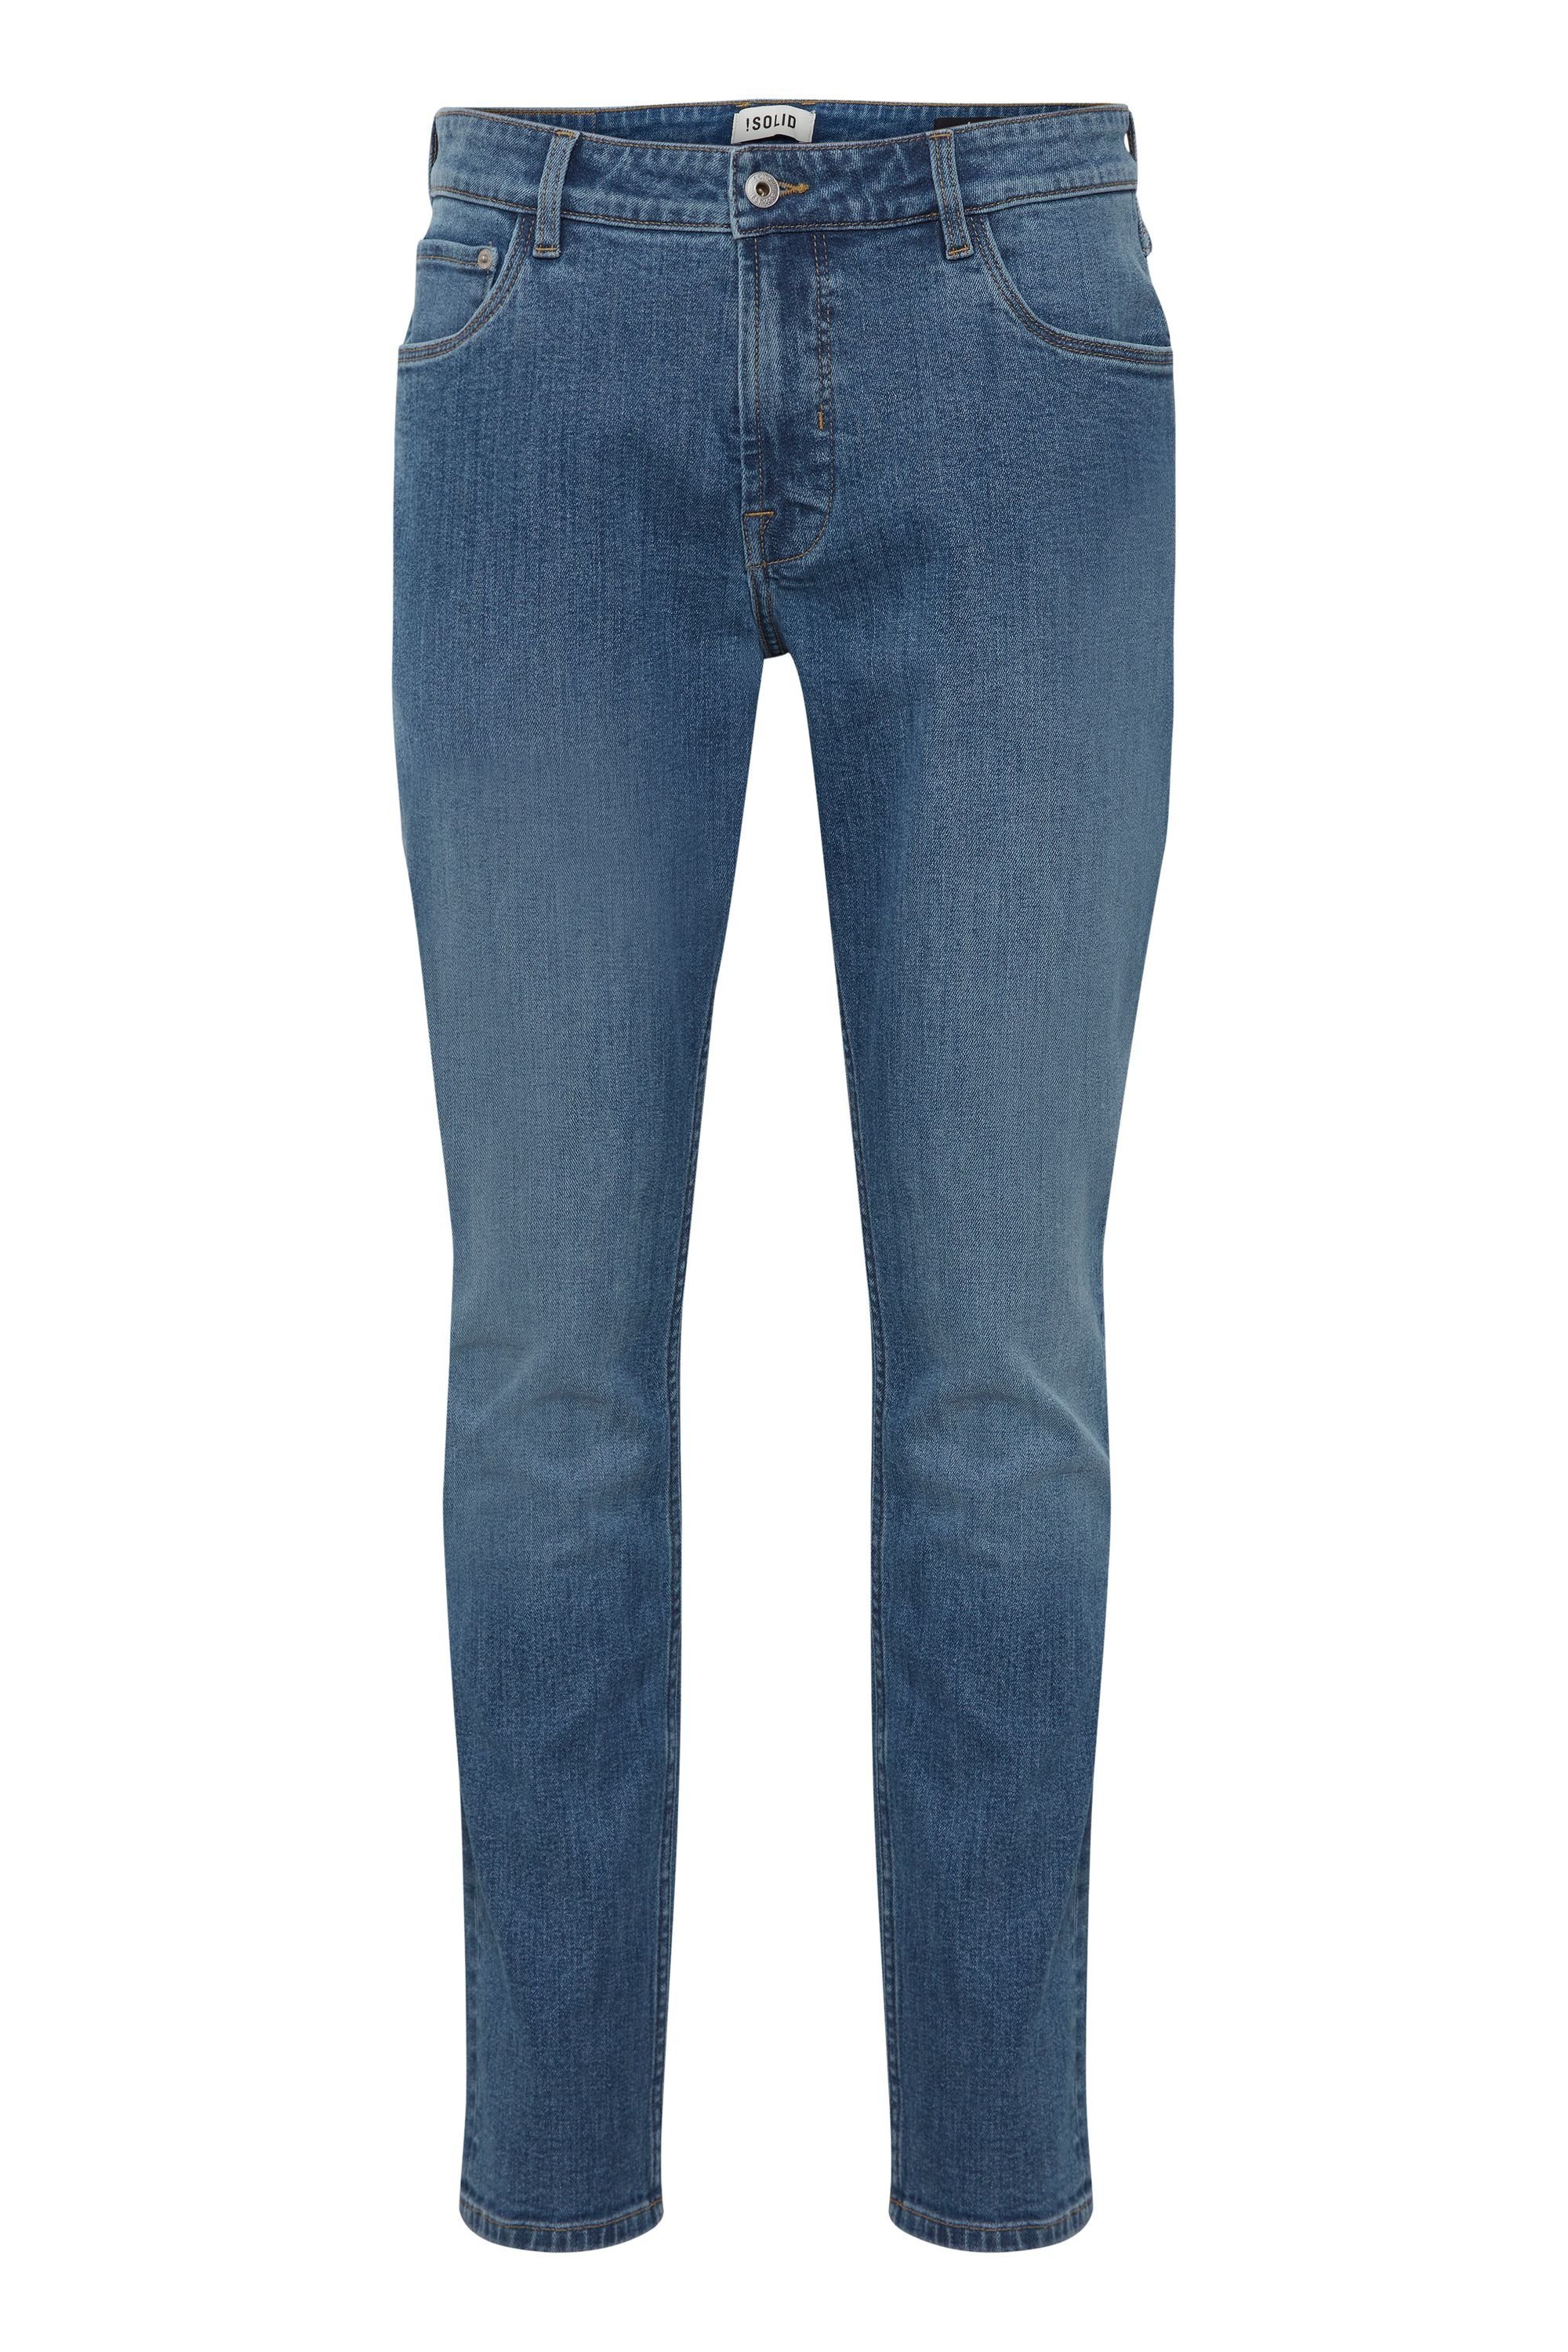 !Solid Slim-fit-Jeans SDDunley Joy - 21107404 Middle Blue Denim (700029)